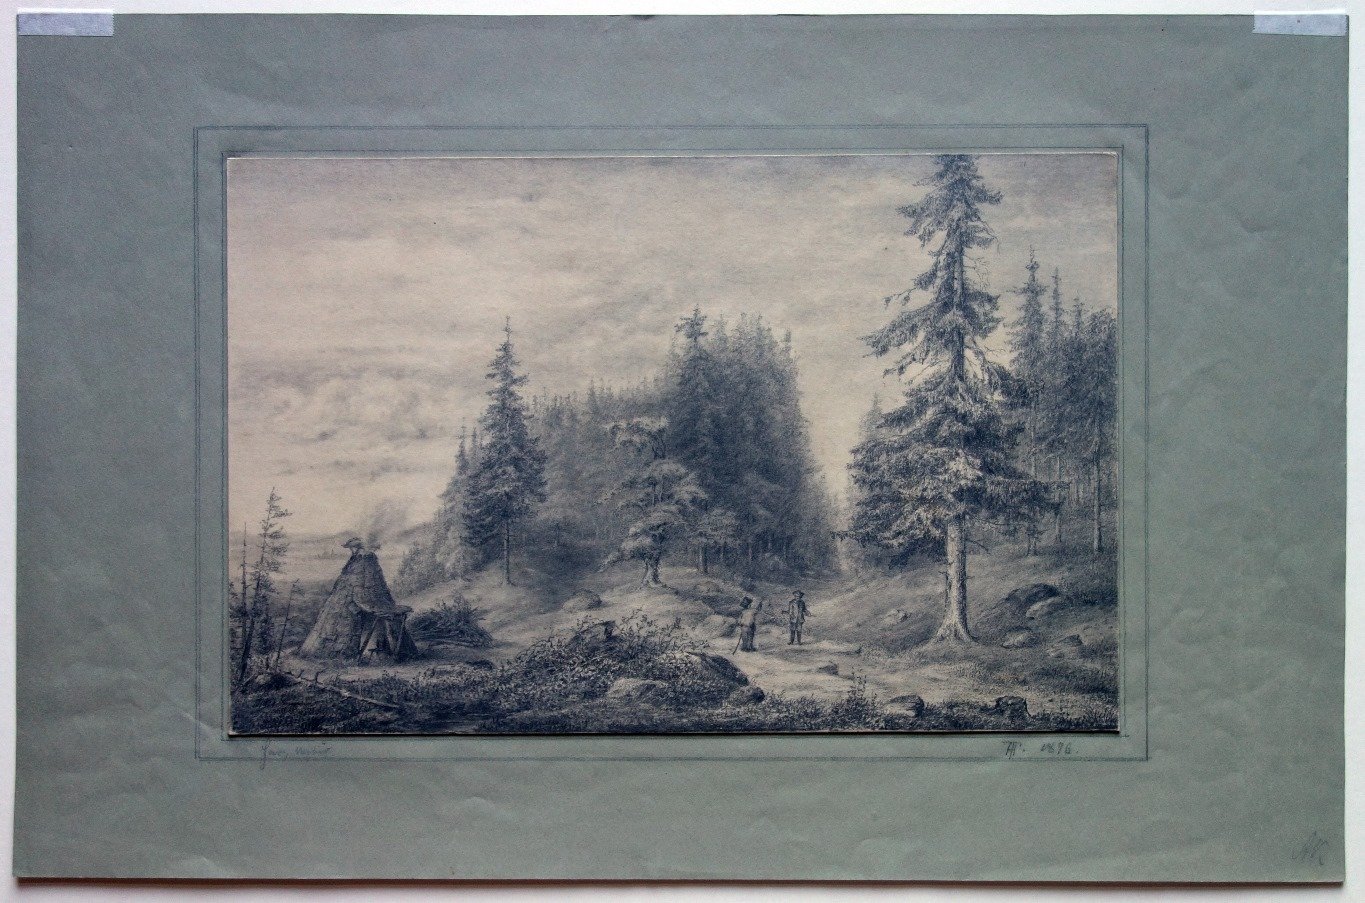 Harzlandschaft mit Köhlerhütte, von Theodor Hosemann, 1875 (Schloß Wernigerode GmbH RR-F)